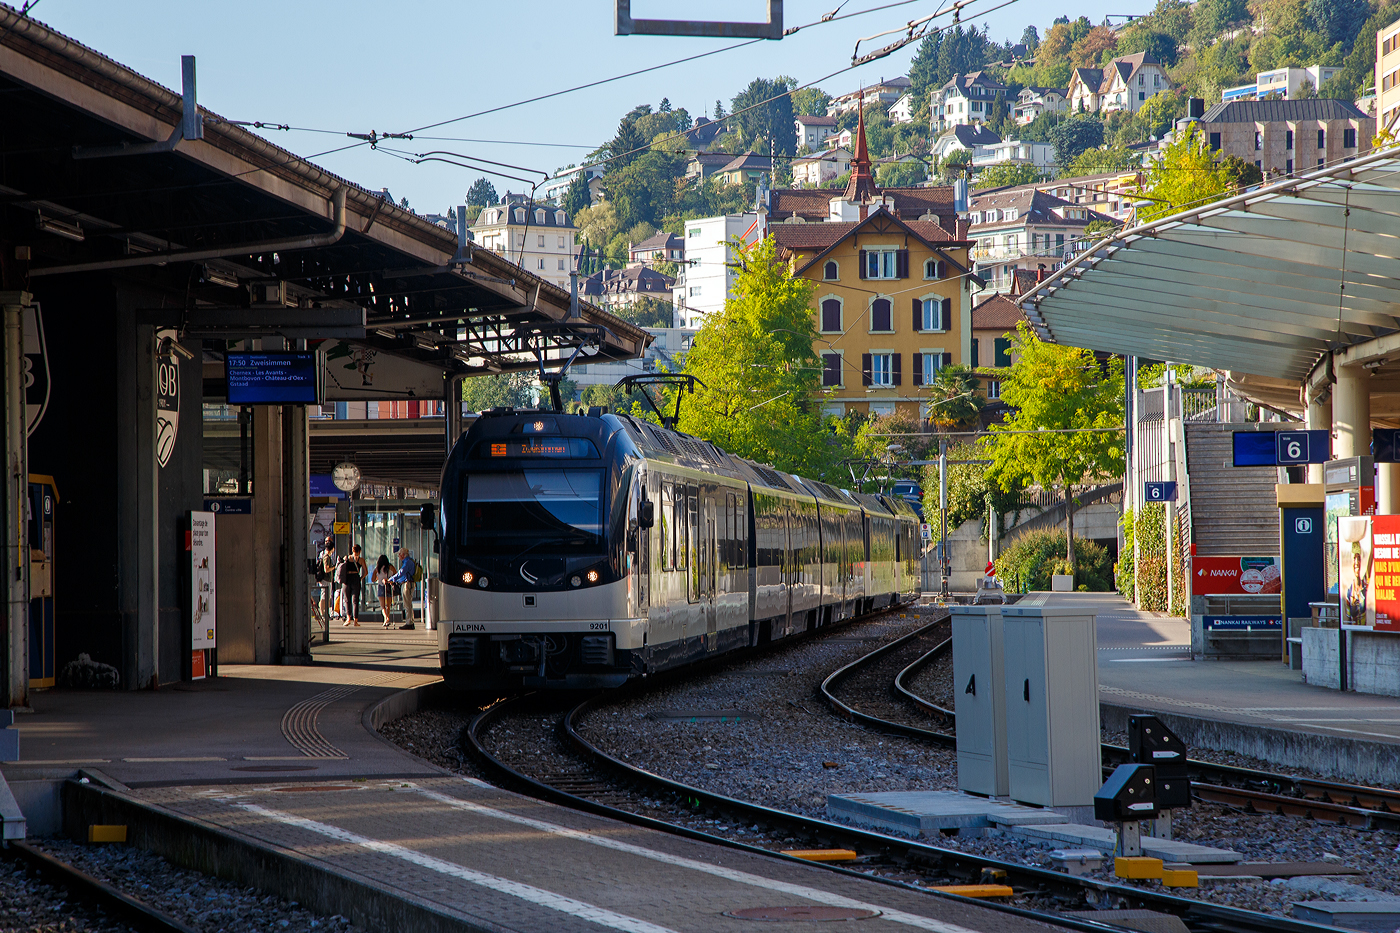 Der MOB Regionalzug nach Zweisimmen steht am 10 September 2023 im Bahnhof Montreux zur Abfahrt bereit. Der Zug besteht hier aus dem MOB ALPINA 9201 bzw. Be 4/4 9201, dazwischen drei normalen (konventionellen) Personenwagen und am Schluss den MOB ALPINA 9301 bzw. ABe 4/4 9301.

Die vier von Stadler 2016 gebauten MOB Alpina-Triebzüge ABe 8/8 9000 sind modular einsetzbar. Ein Triebzug besteht jeweils aus einem Be 4/4 9200er und einem ABe 4/4 9300er Triebwagen. So können sie (wie hier mit 2) mit bis zu neun (hier 2) bestehenden Zwischenwagen ergänzt werden.

Die MOB (Montreux–Berner Oberland-Bahn) bestellt Ende 2013 diese Triebzüge bei Stadler Rail, da die ABDe 8/8 Doppeltriebwagen der Serie 4000, die lange Zeit das Rückgrat der Zugförderung auf der Strecke Montreux – Zweisimmen waren, an der Leistungsgrenze waren um den Bedürfnissen des Verkehrs gerecht zu werden. Auch die Geschwindigkeit und Beschleunigung sind unzureichend. Die neuen Triebwagen können sowohl für die Traktion von schwere Züge (bis zu 9 Wagons), sowie für Solofahrten außerhalb der Hauptverkehrszeiten, was ihre optimale Nutzung mit bis zu vier Umläufen zwischen Montreux und Zweisimmen ermöglicht. Diese dynamischen und zeitgemäßen Züge sind einladend und komfortabel für Reisende (obwohl wir wohl lieber die ABDe 8/8 4000 sehen würden). Sie reagieren technologisch auf schwierige Betriebsbedingungen, aber auch auf Erwartungen Kunden (Reisende).

Technische Merkmale:
-Wagenkasten aus Aluminium-Strangpressprofile für eine höhere Lebensdauer und leichtere Instandhaltung bei gleichzeitig geringerem Fahrzeuggewicht.
- Luftgefederte Drehgestelle sorgen für noch mehr Komfort und eine verbesserte Laufruhe
- Mehrfachtraktion mit bis zu 3 Doppeltriebwagen
- Rekuperationsbremse / dynamische und elektromagnetische Bremse
- 2 Eingänge pro Seite für einen schnellen Fahrgastwechsel
- Behindertengerechte Zugangsmöglichkeiten
- Behindertengerechtes geschlossenes WC-System

TECHNISCHE DATEN (als Triebzug ohne Zwischenwagen):
Fahrzeugbezeichnung: ABe 8/8 (ABe 4/4 + Be 4/4)
Anzahl Fahrzeuge: 4 (je 4 ABe 4/4 und Be 4/4)
Inbetriebsetzung: 2016
Spurweite: 1.000 mm
Achsanordnung: Bo’Bo’ + Bo’Bo’
Länge über Kupplung: 40.920 mm
Fahrzeugbreite: 2.650 mm
Fahrzeughöhe: 3.850 mm
Drehzapfenabstand:12.830 mm
Achsstand im Drehgestell: 2.000 mm
Treibraddurchmesser (neu): 810 mm
Höchstgeschwindigkeit: 100 km/h
Dauerleistung am Rad: 2 x 1.020 kW
Maximalleistung am Rad: 2 x 1.400 kW
Anfahrzugkraft: 300 kN (bis 35 km/h)
Speisespannung: 960 V DC (Gleichstrom)
Maximale Anfahrtsbeschleunigung: 1,2 m/s²
Maximale Bremsverzögerung: 1,33 m/s²
Kleister befahrbarer Gleisbogen: R = 47 m
Sitzplätze: 1. Klasse 18 / 2. Klasse 55 und 8 Klappsitze
Stehplätze (4 Pers./m²): 125
Fußbodenhöhe: Niederflur 400 mm / Hochflur 1.040 mm
Einstiegbreite: 1.300 mm
Kasten-Längsdruckkraft: 800 kN

Quelle: Stadler Rail (französisch)